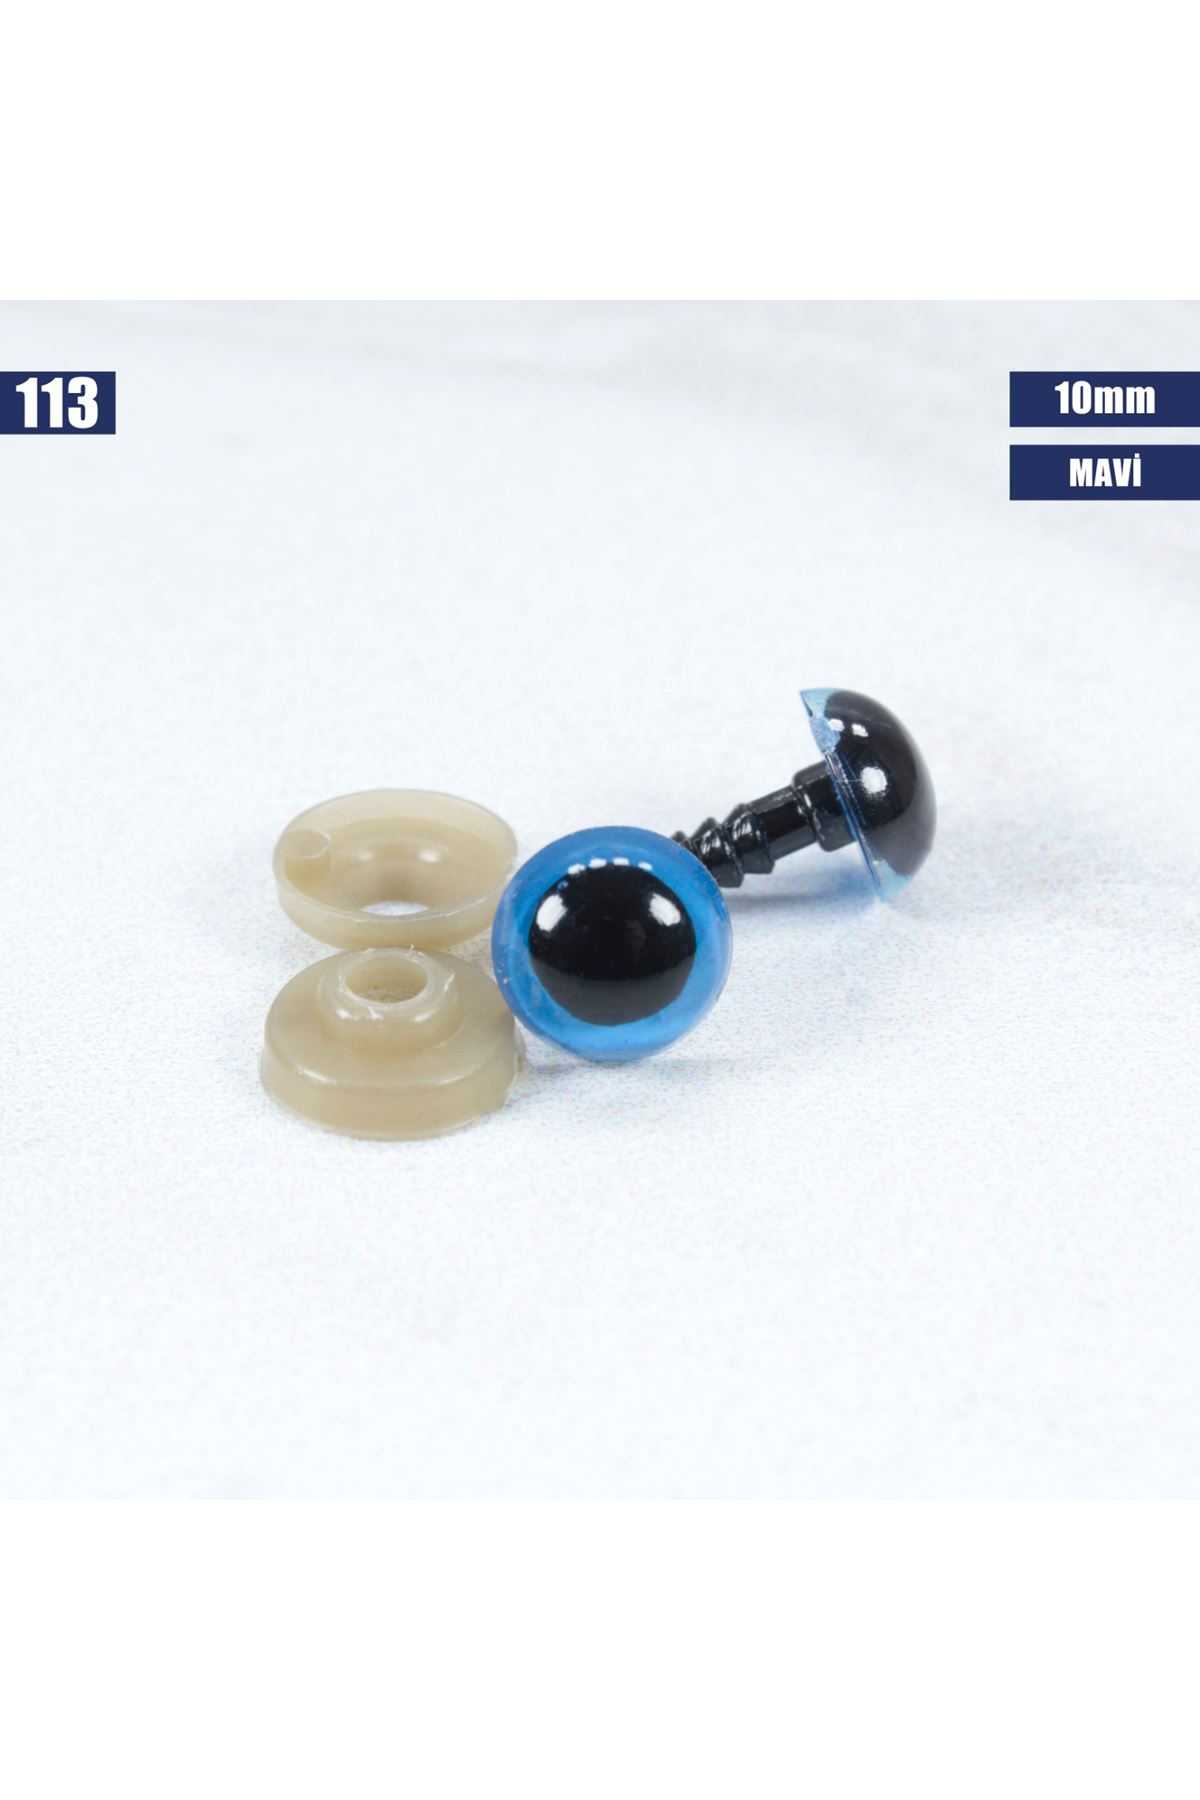 Mavi Vidalı Göz 10 mm - 113